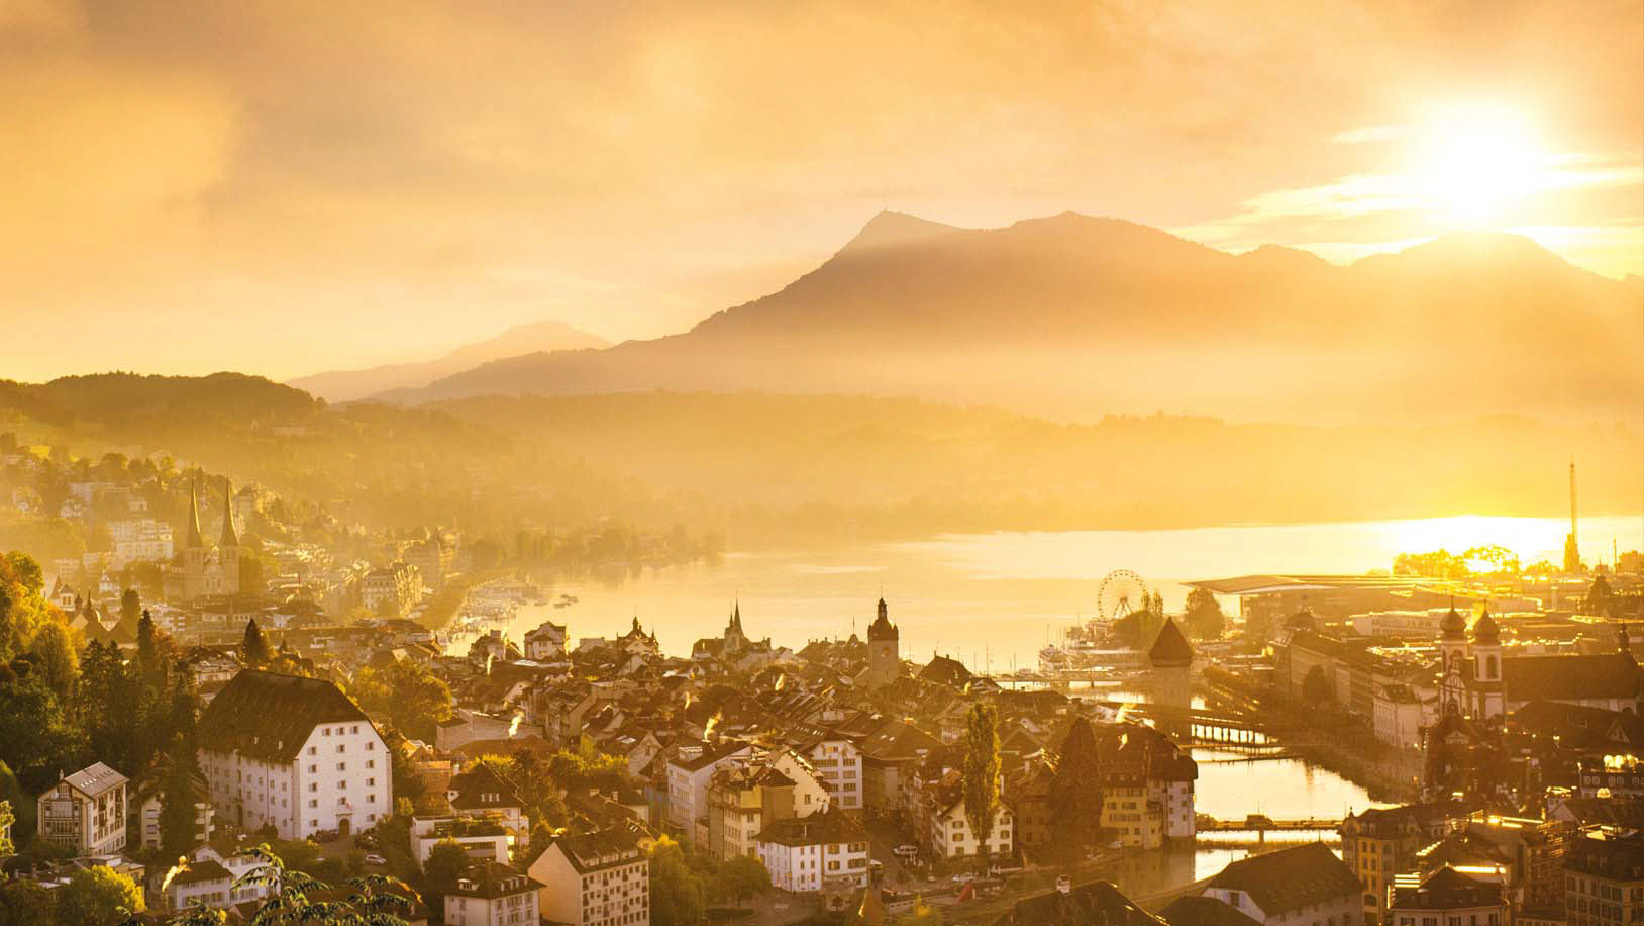 ルツェルンはスイスの中央に位置し、美しい湖と奥に連なるアルプスの山ある。中世の建物が立ち並び、絵画のような風景は人々を魅了する美しい古都である